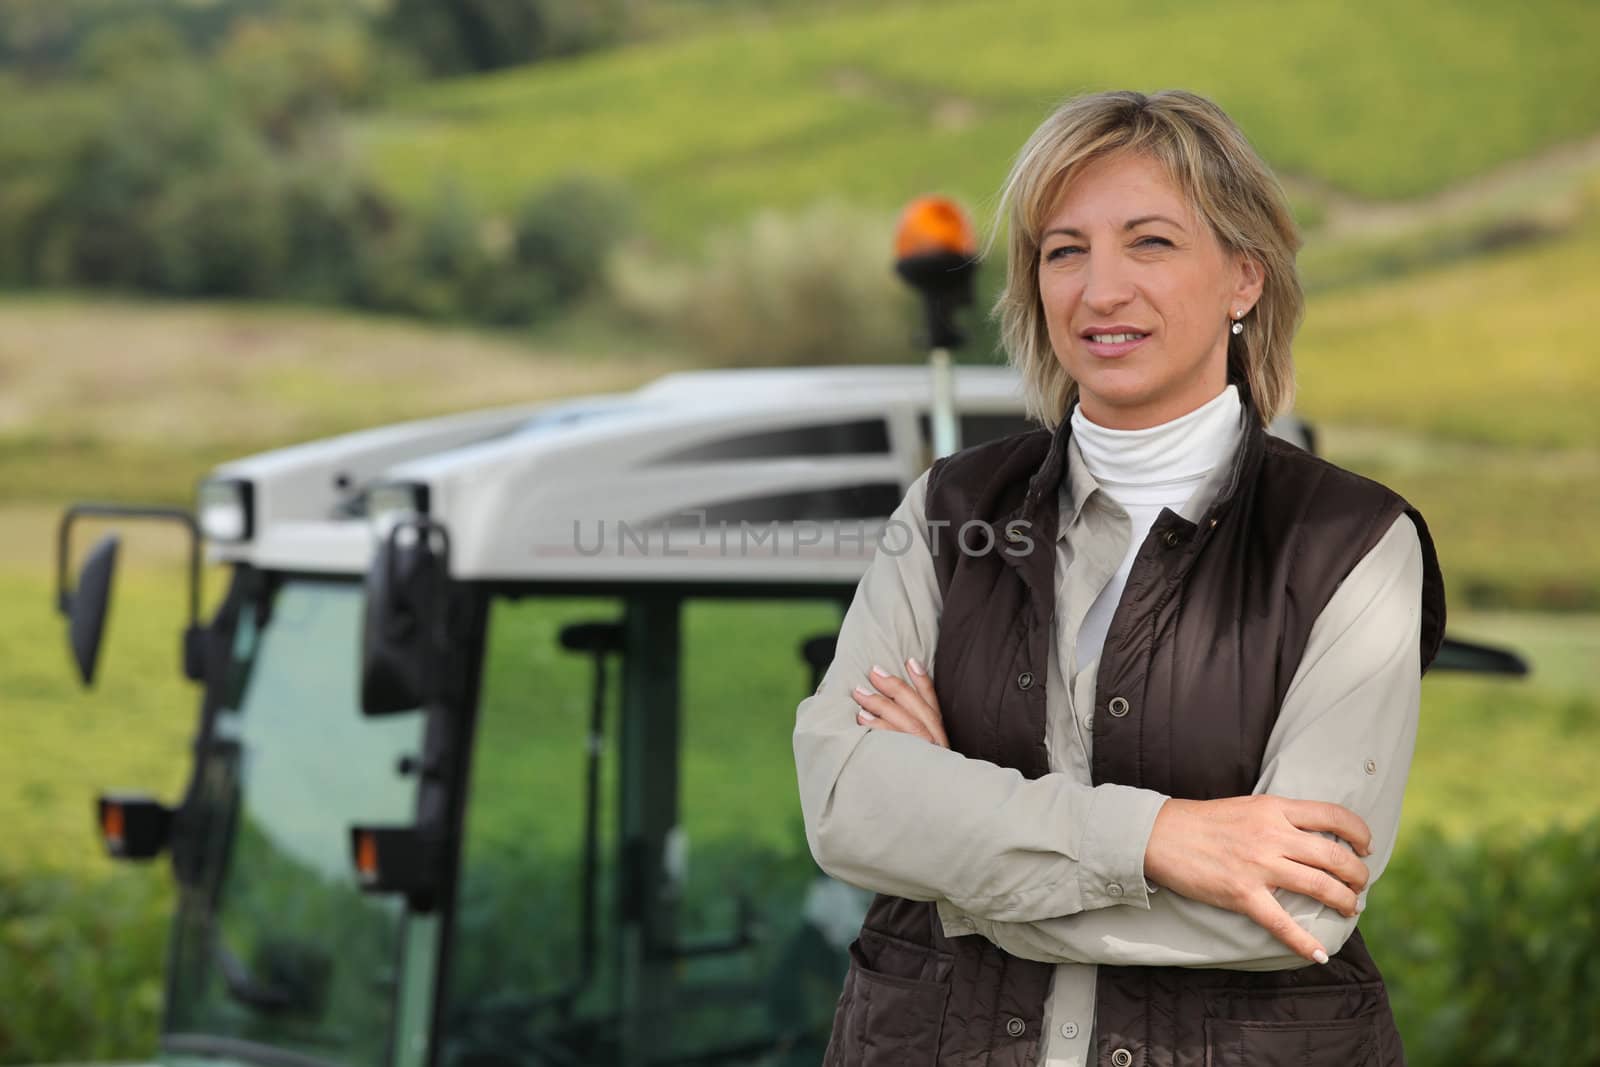 Female farmer by phovoir